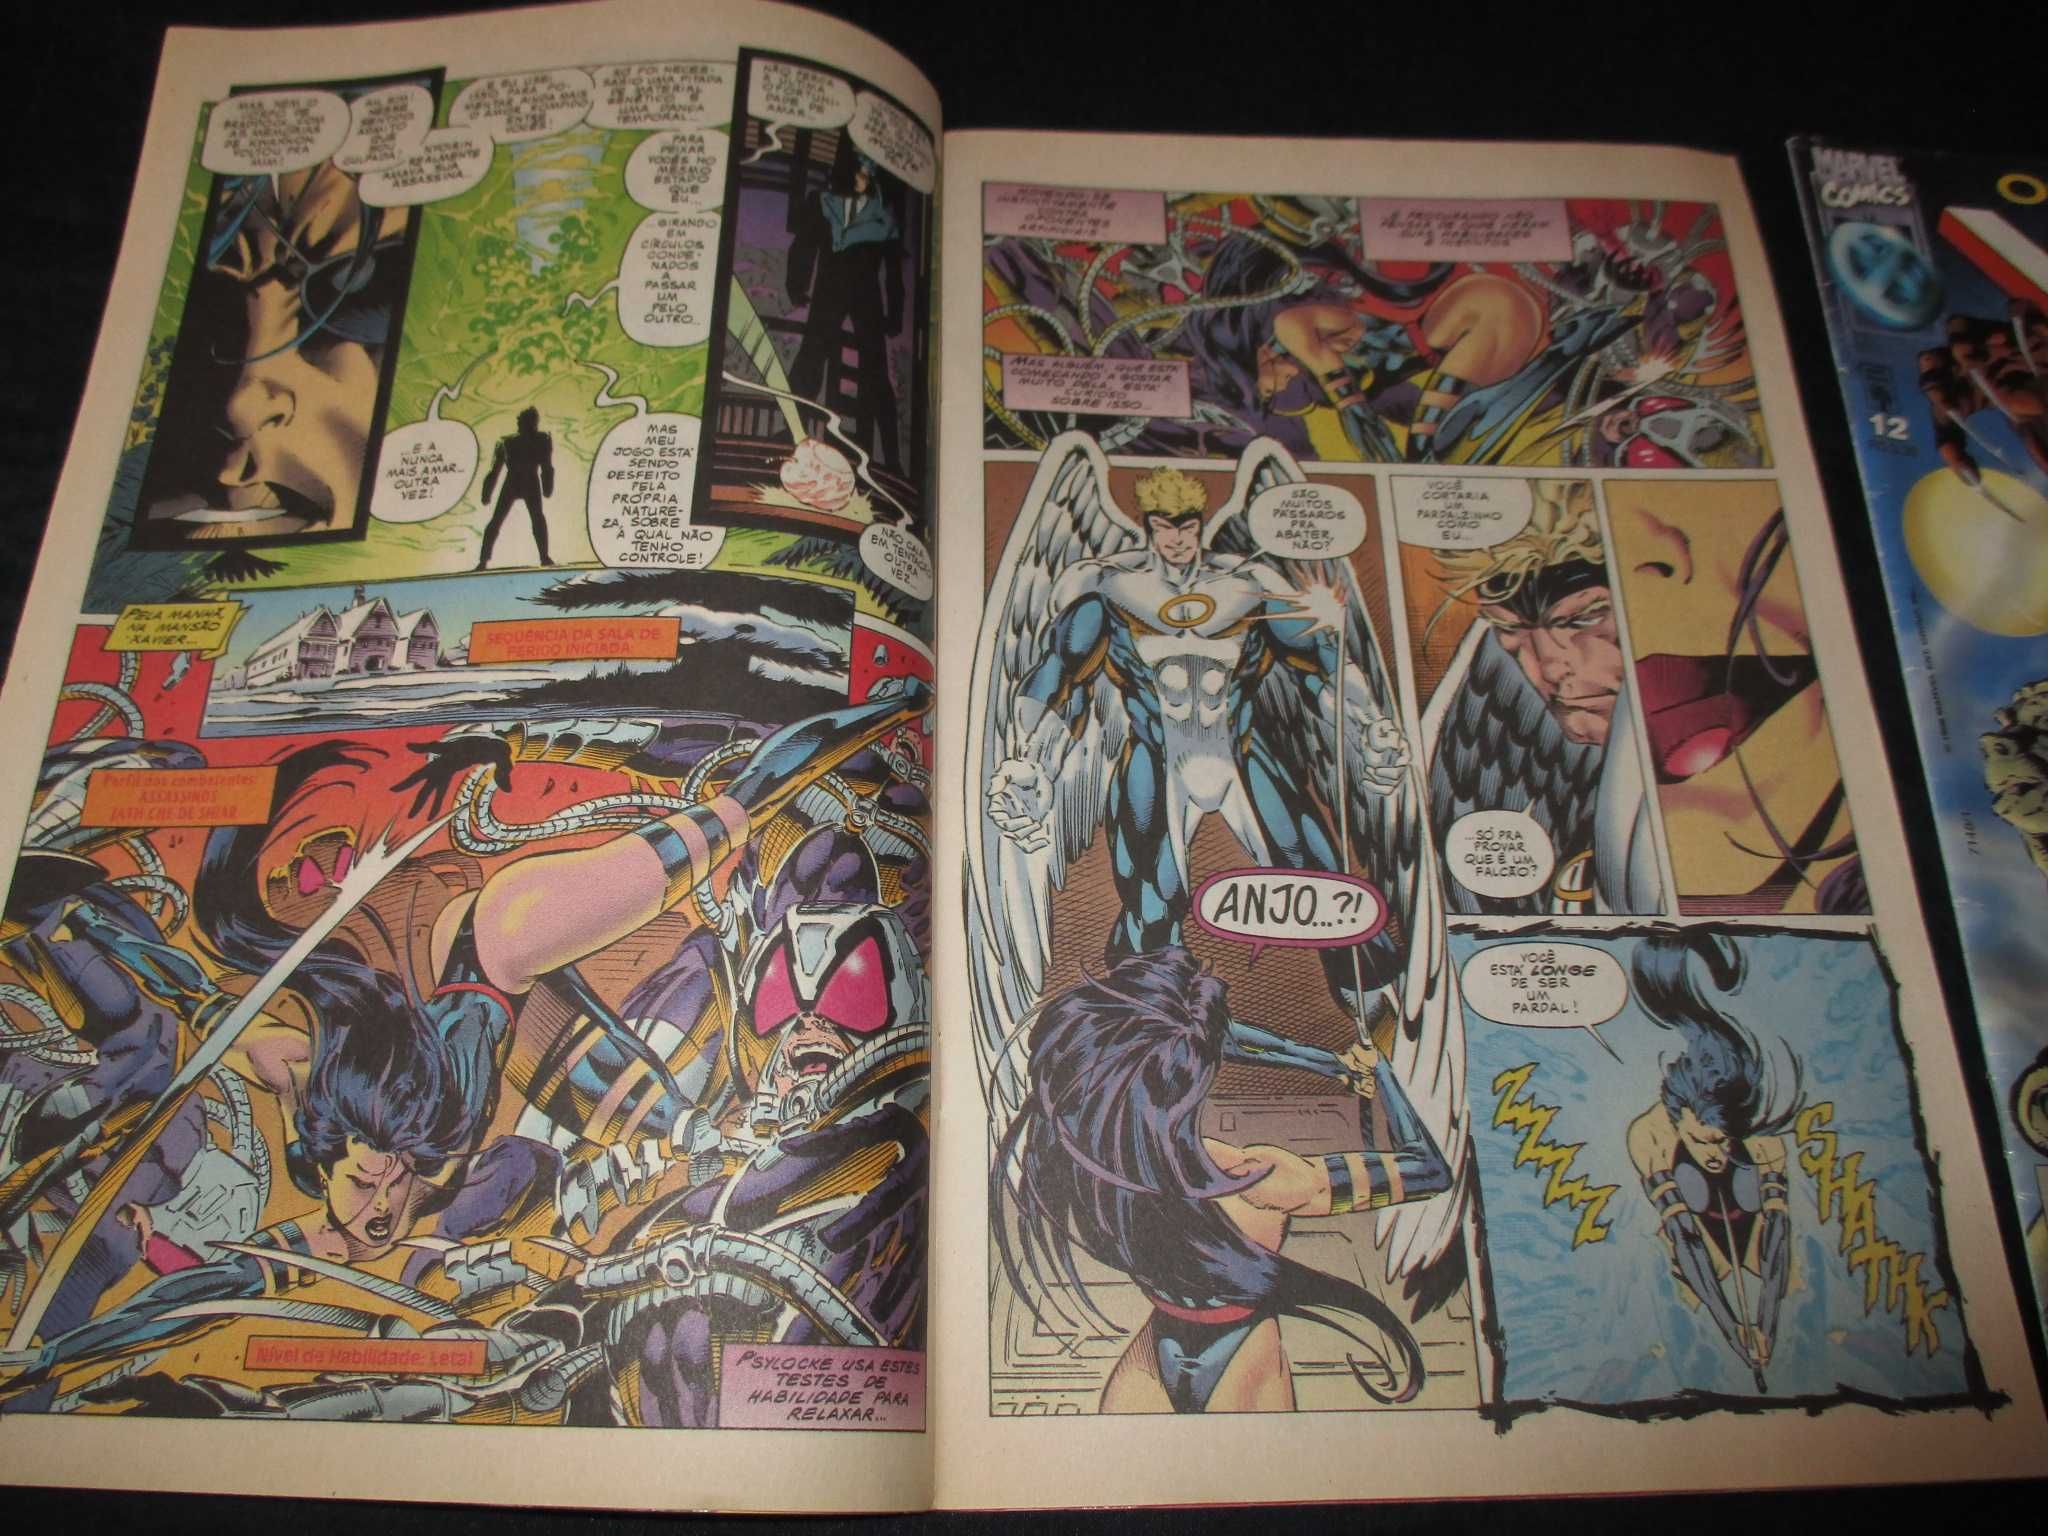 Livros BD Os Fabulosos X-Men 11 e 12 Abril Marvel